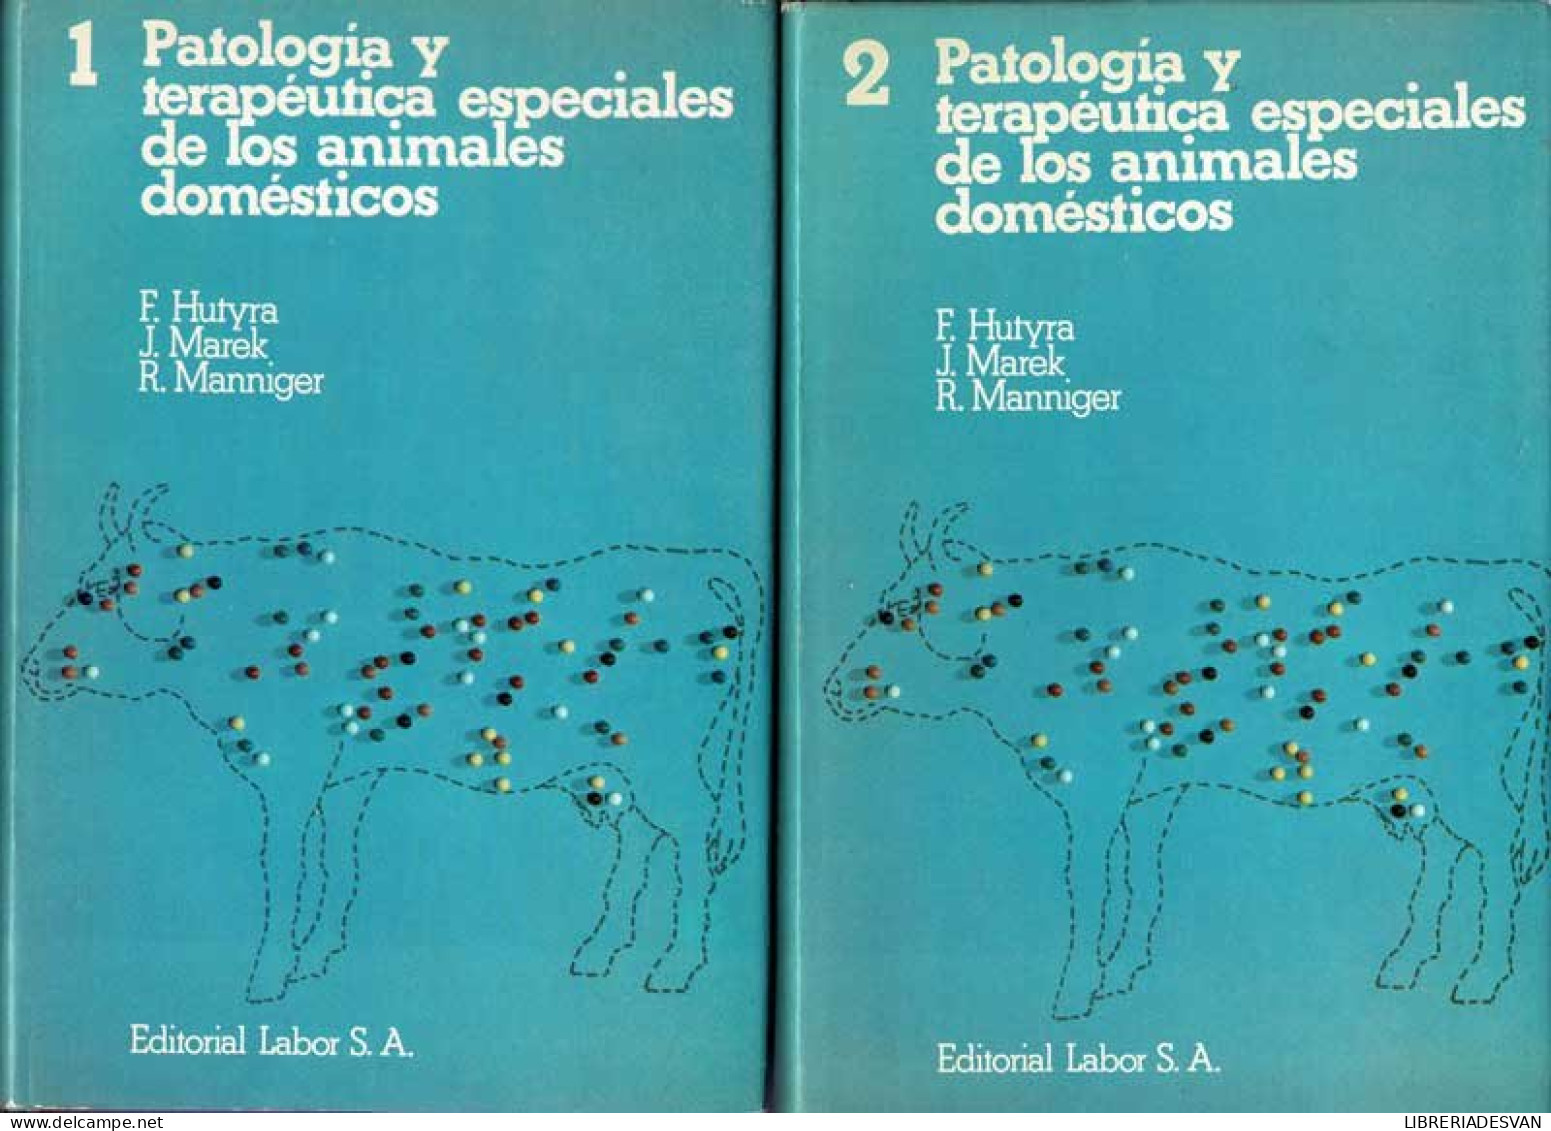 Patología Y Terapéutica Especiales De Los Animales Domésticos. 2 Volúmenes - F. Hutyra, J. Marek, R. Manniger - Practical